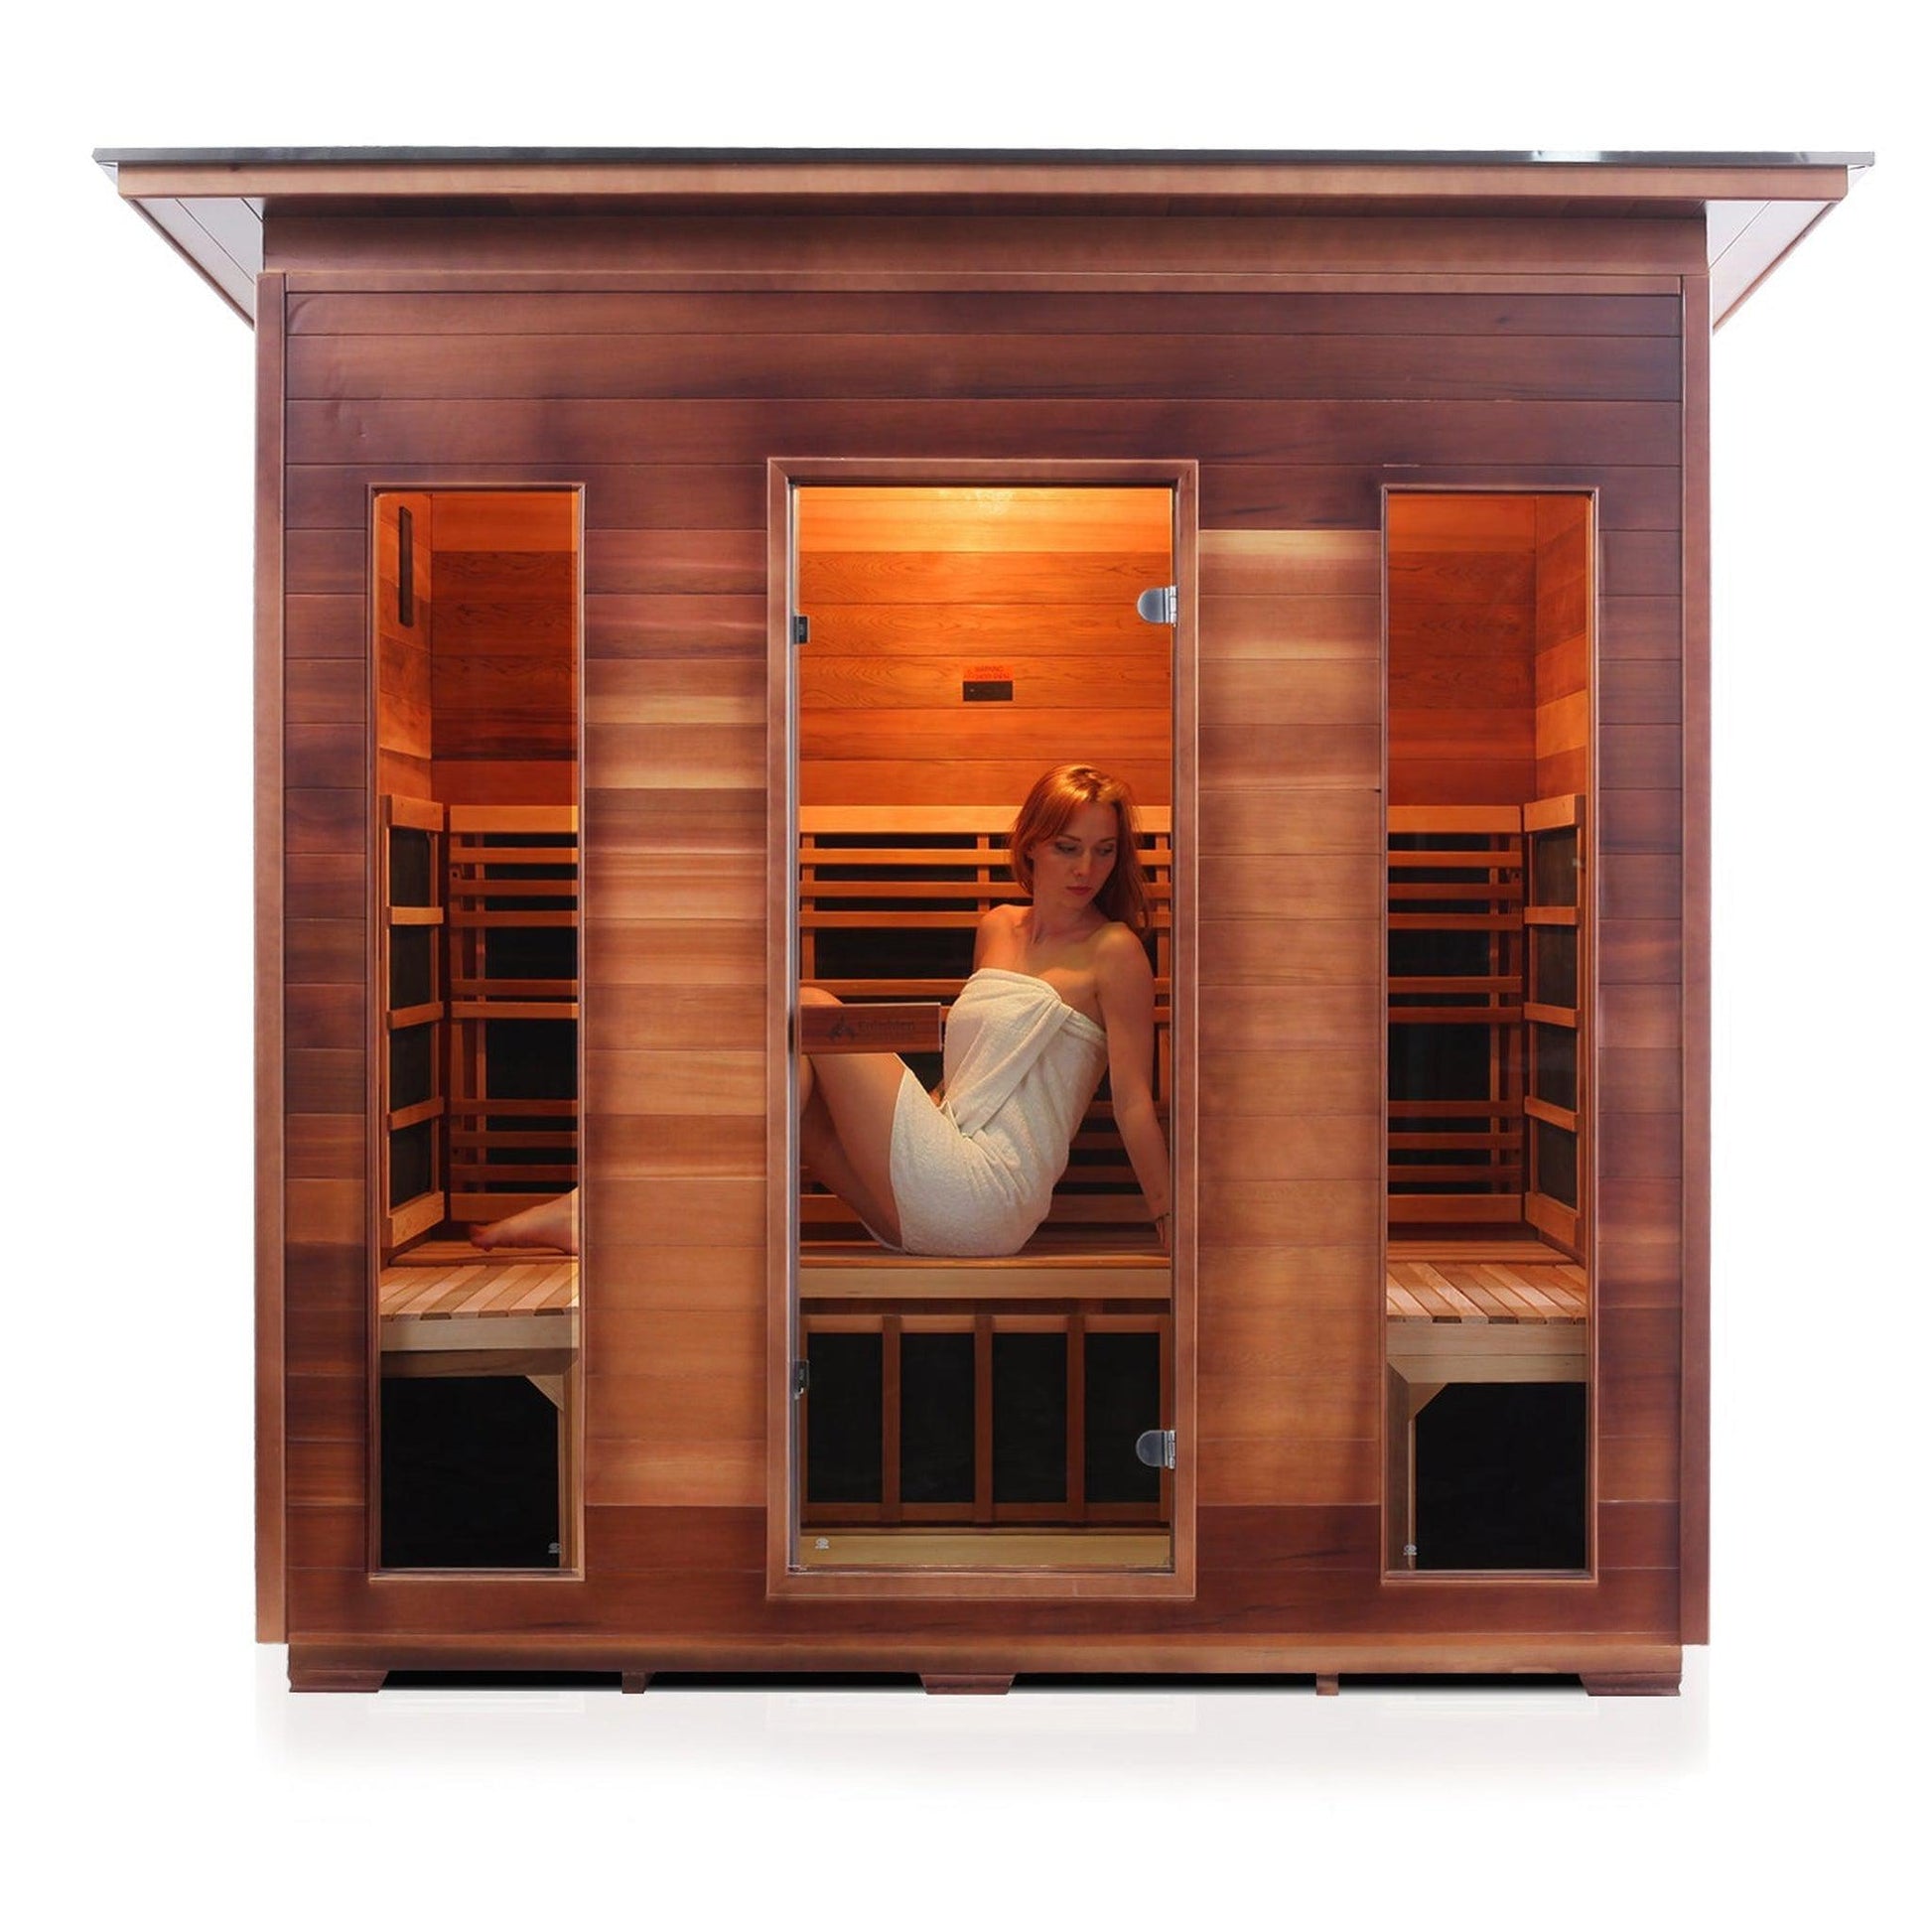 Enlighten InfraNature Original Rustic 5-Person Slope Roof Full Spectrum Infrared Outdoor Sauna